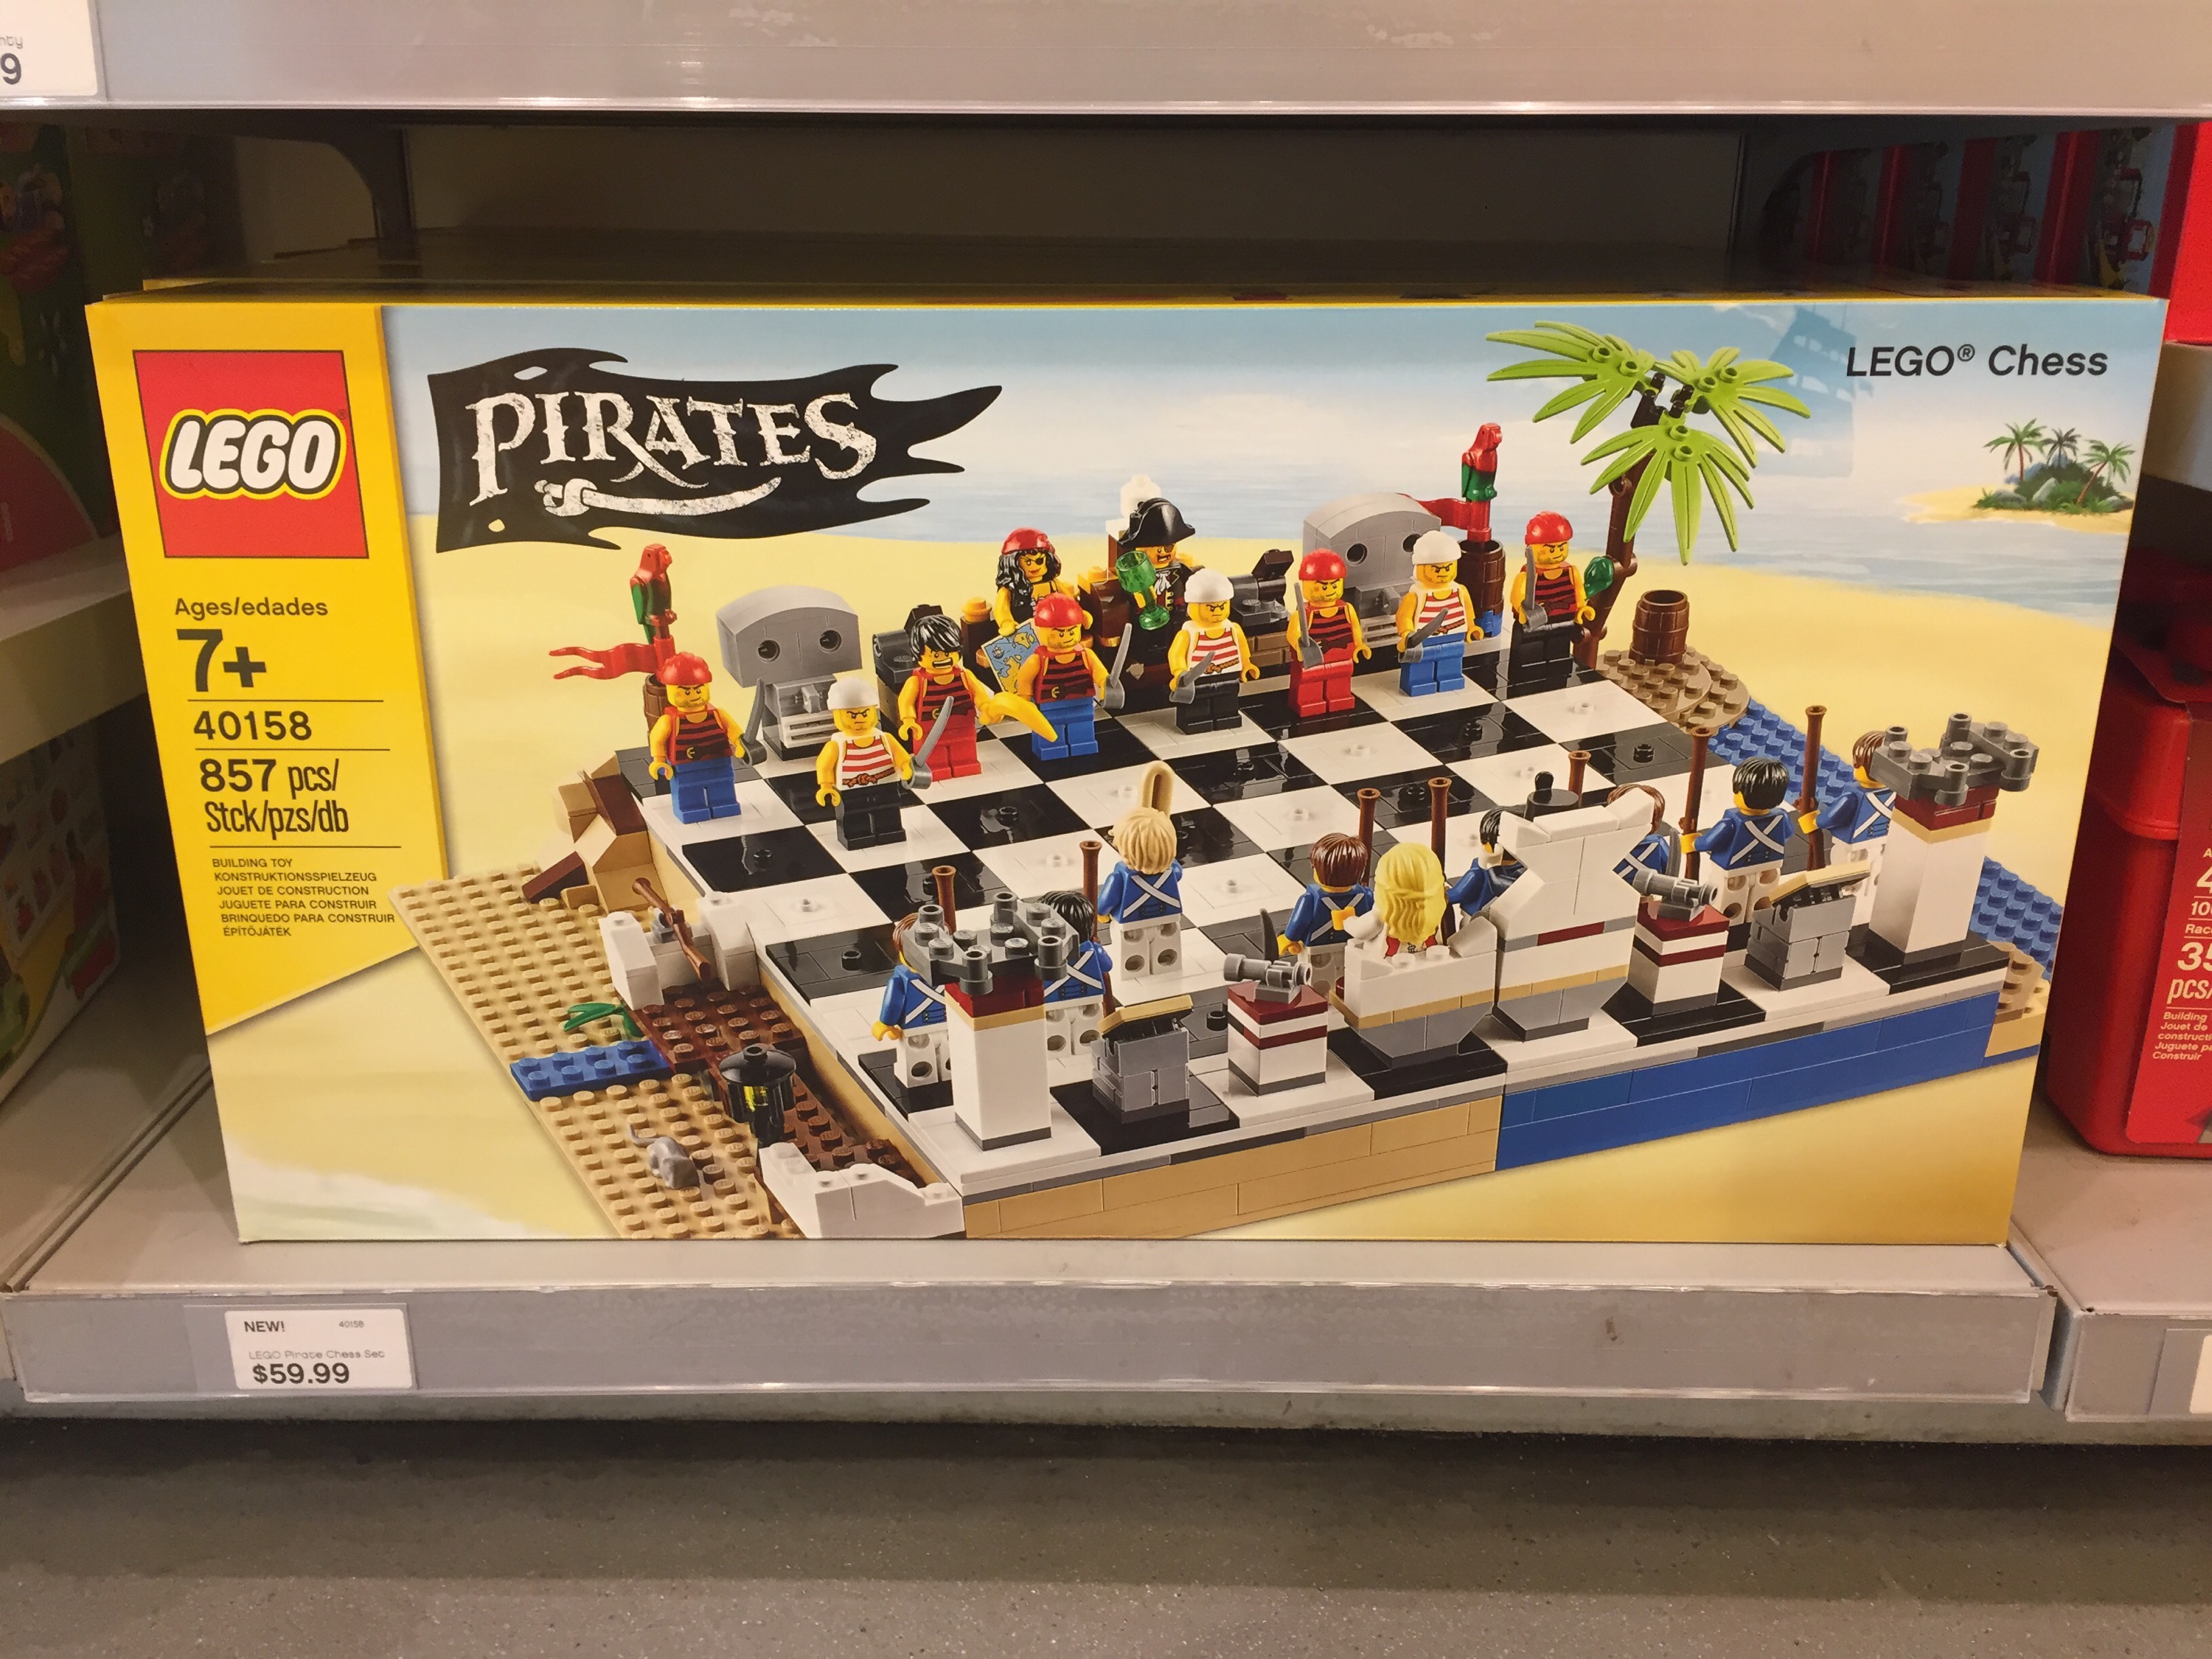 40158 lego 10 Pirates minifigures 